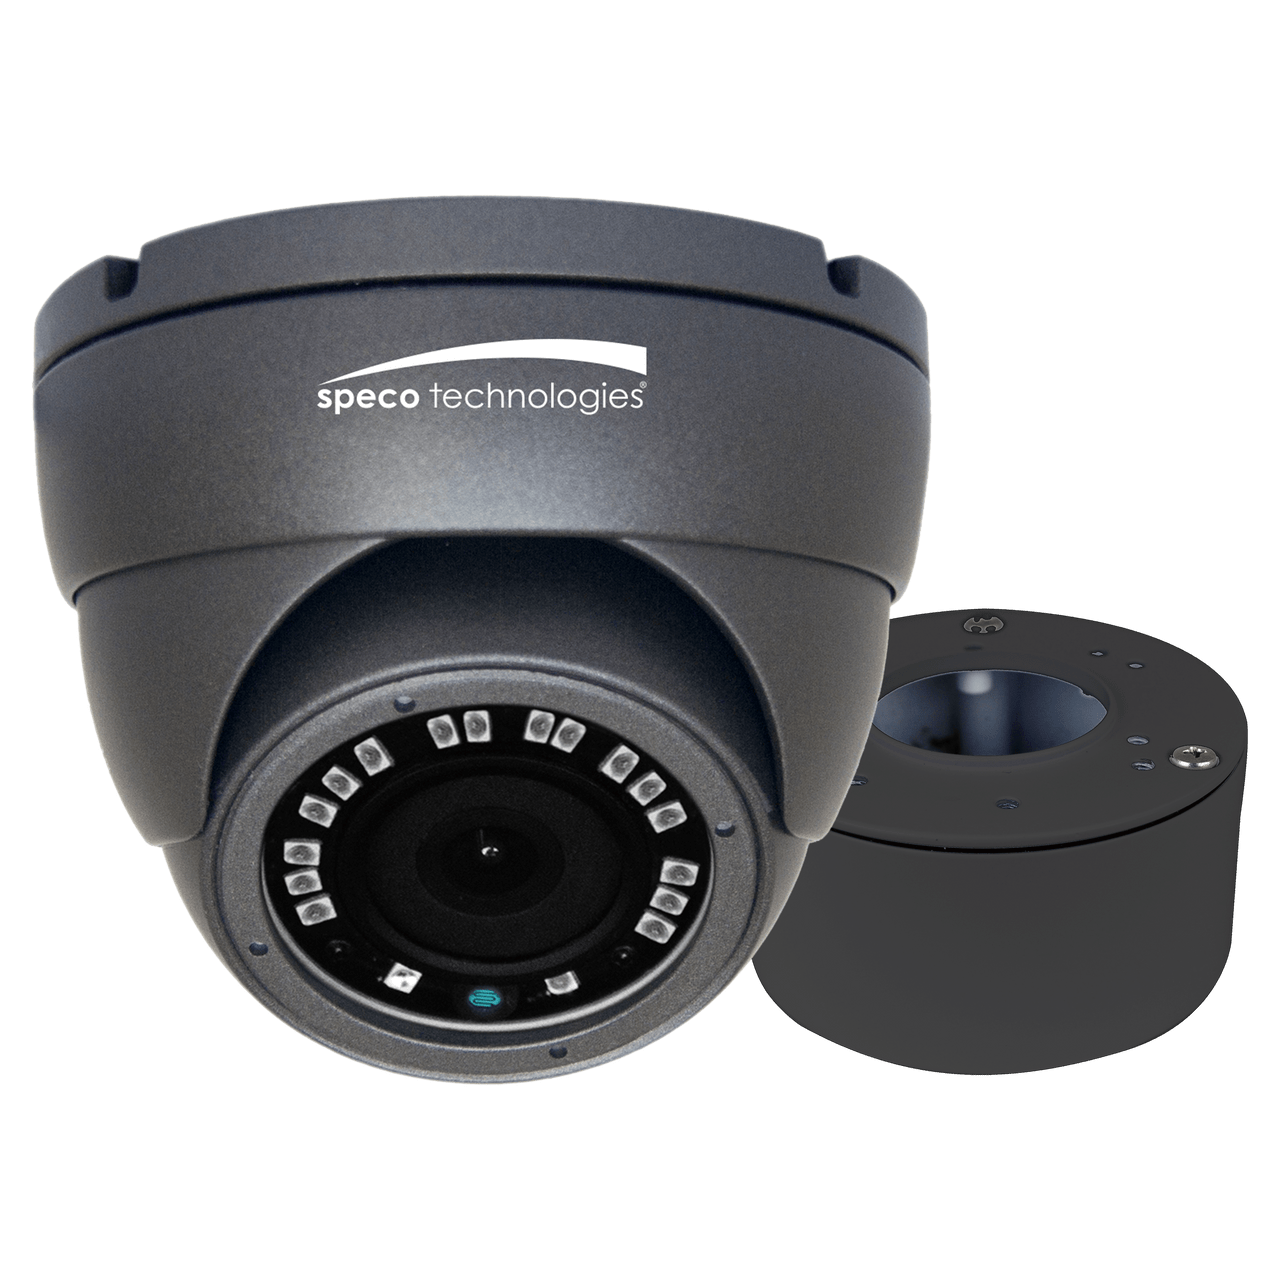 Speco Technologies VLDT4G 2MP HD-TVI Eyeball Camera, 3.6mm Lens, Included Junc Box, UL, Grey Housing (VLDT4G)